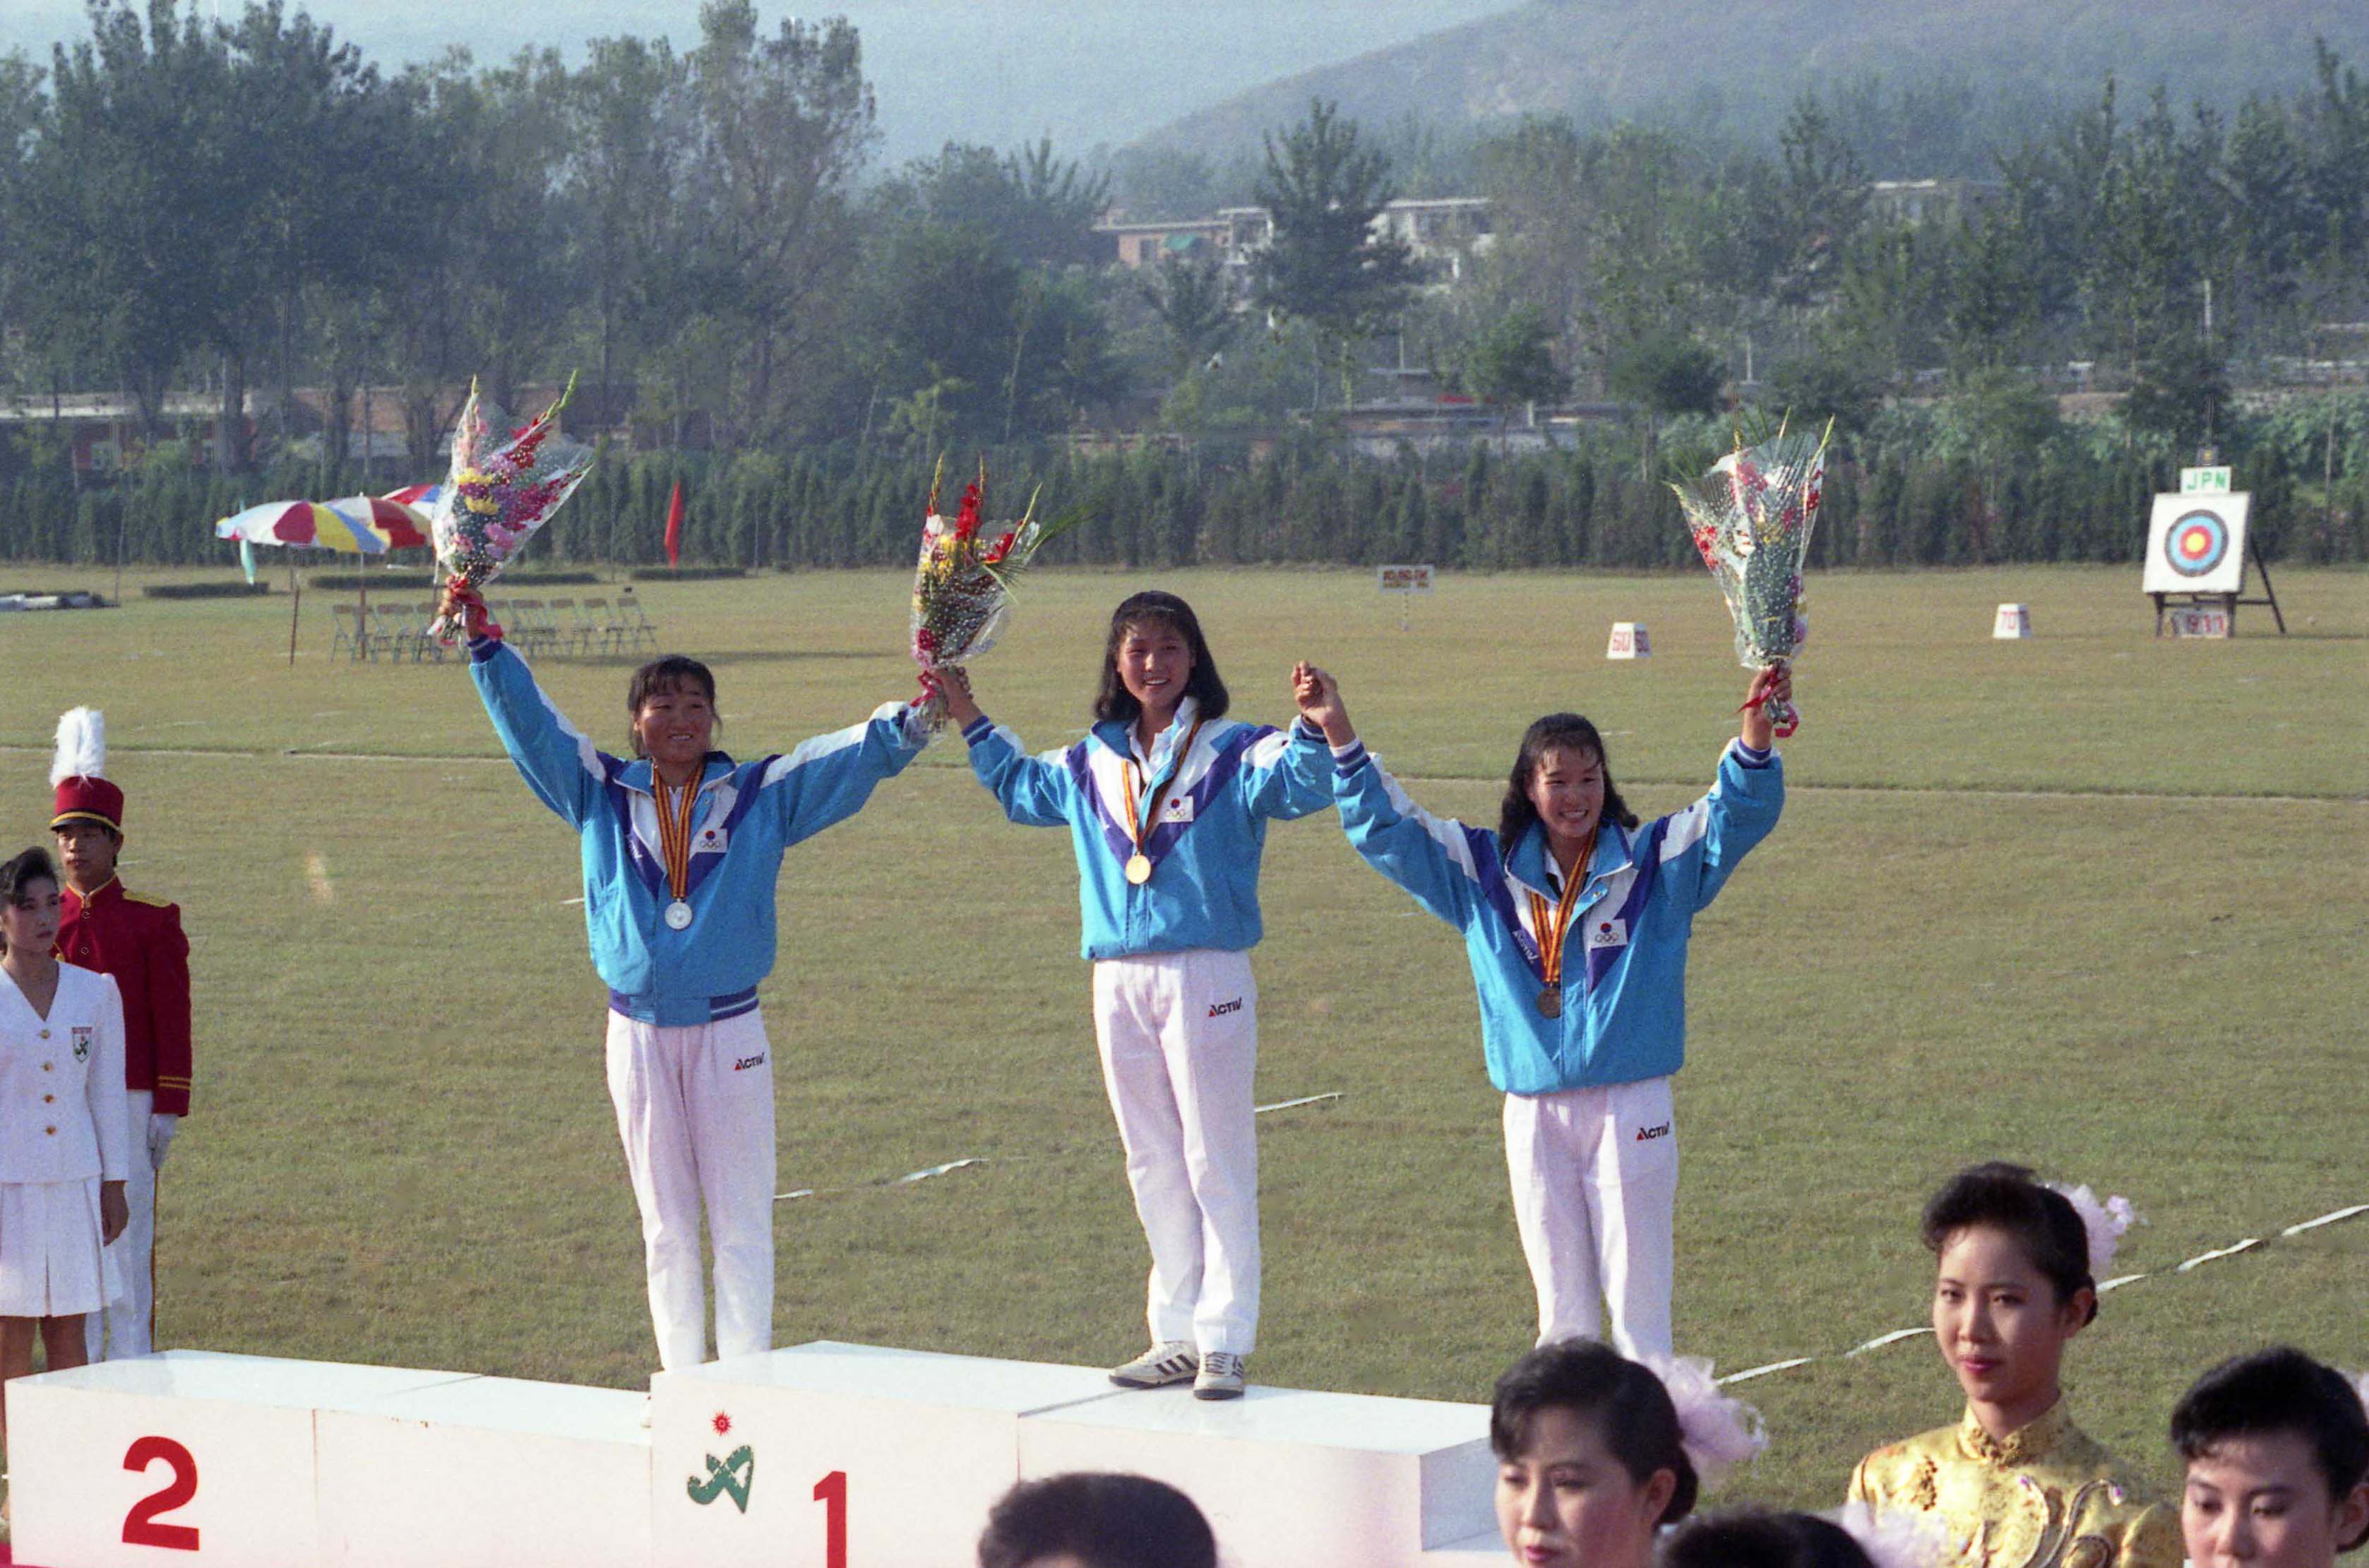 북경아시아경기대회 양궁 남·여 개인, 단체 우승 시상식